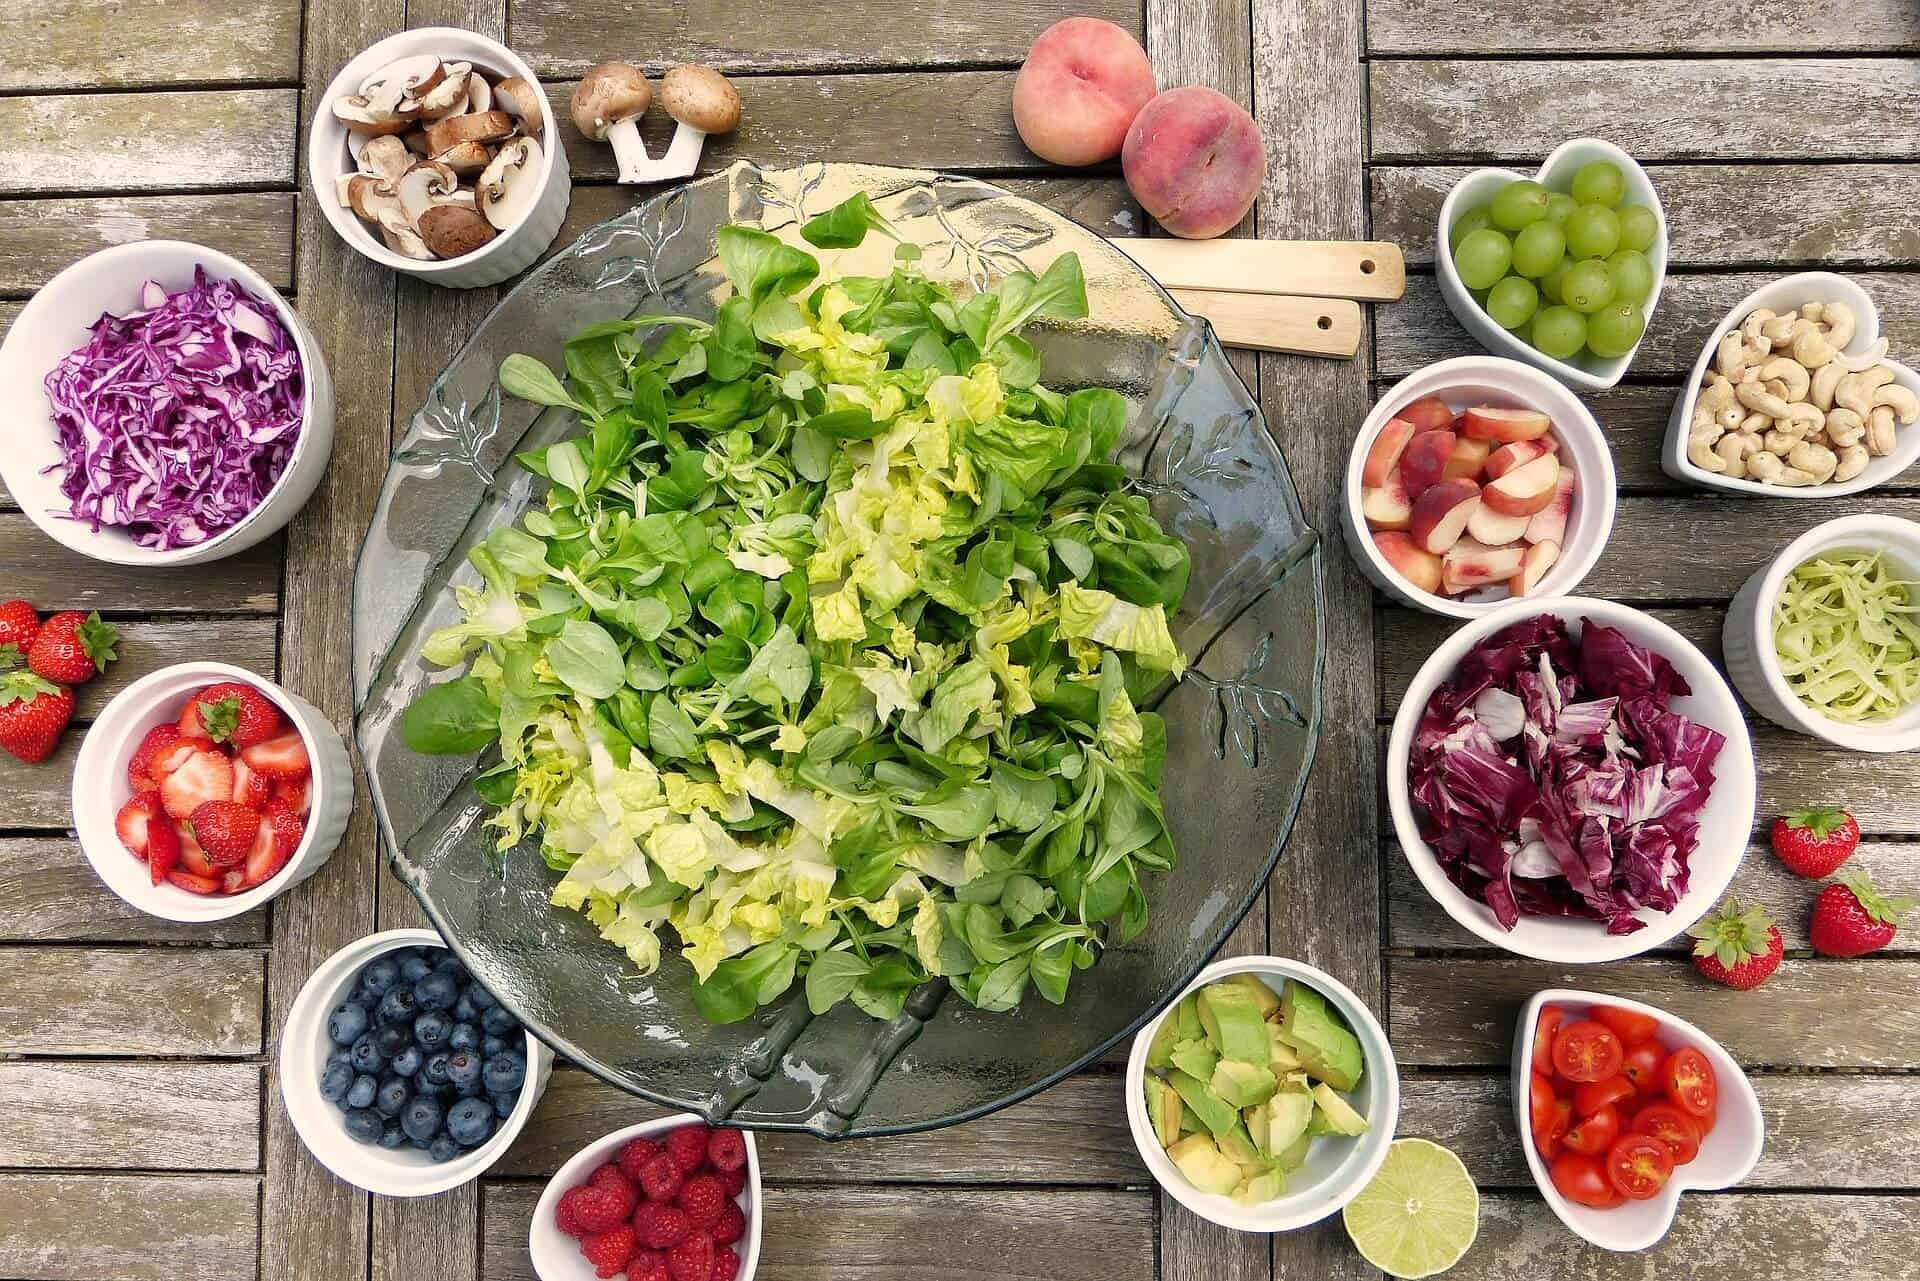 Paleo diéta - nový trend alebo návrat ku koreňom? - salad 2756467 1920 - Paleo diéta &#8211; nový trend alebo návrat ku koreňom?